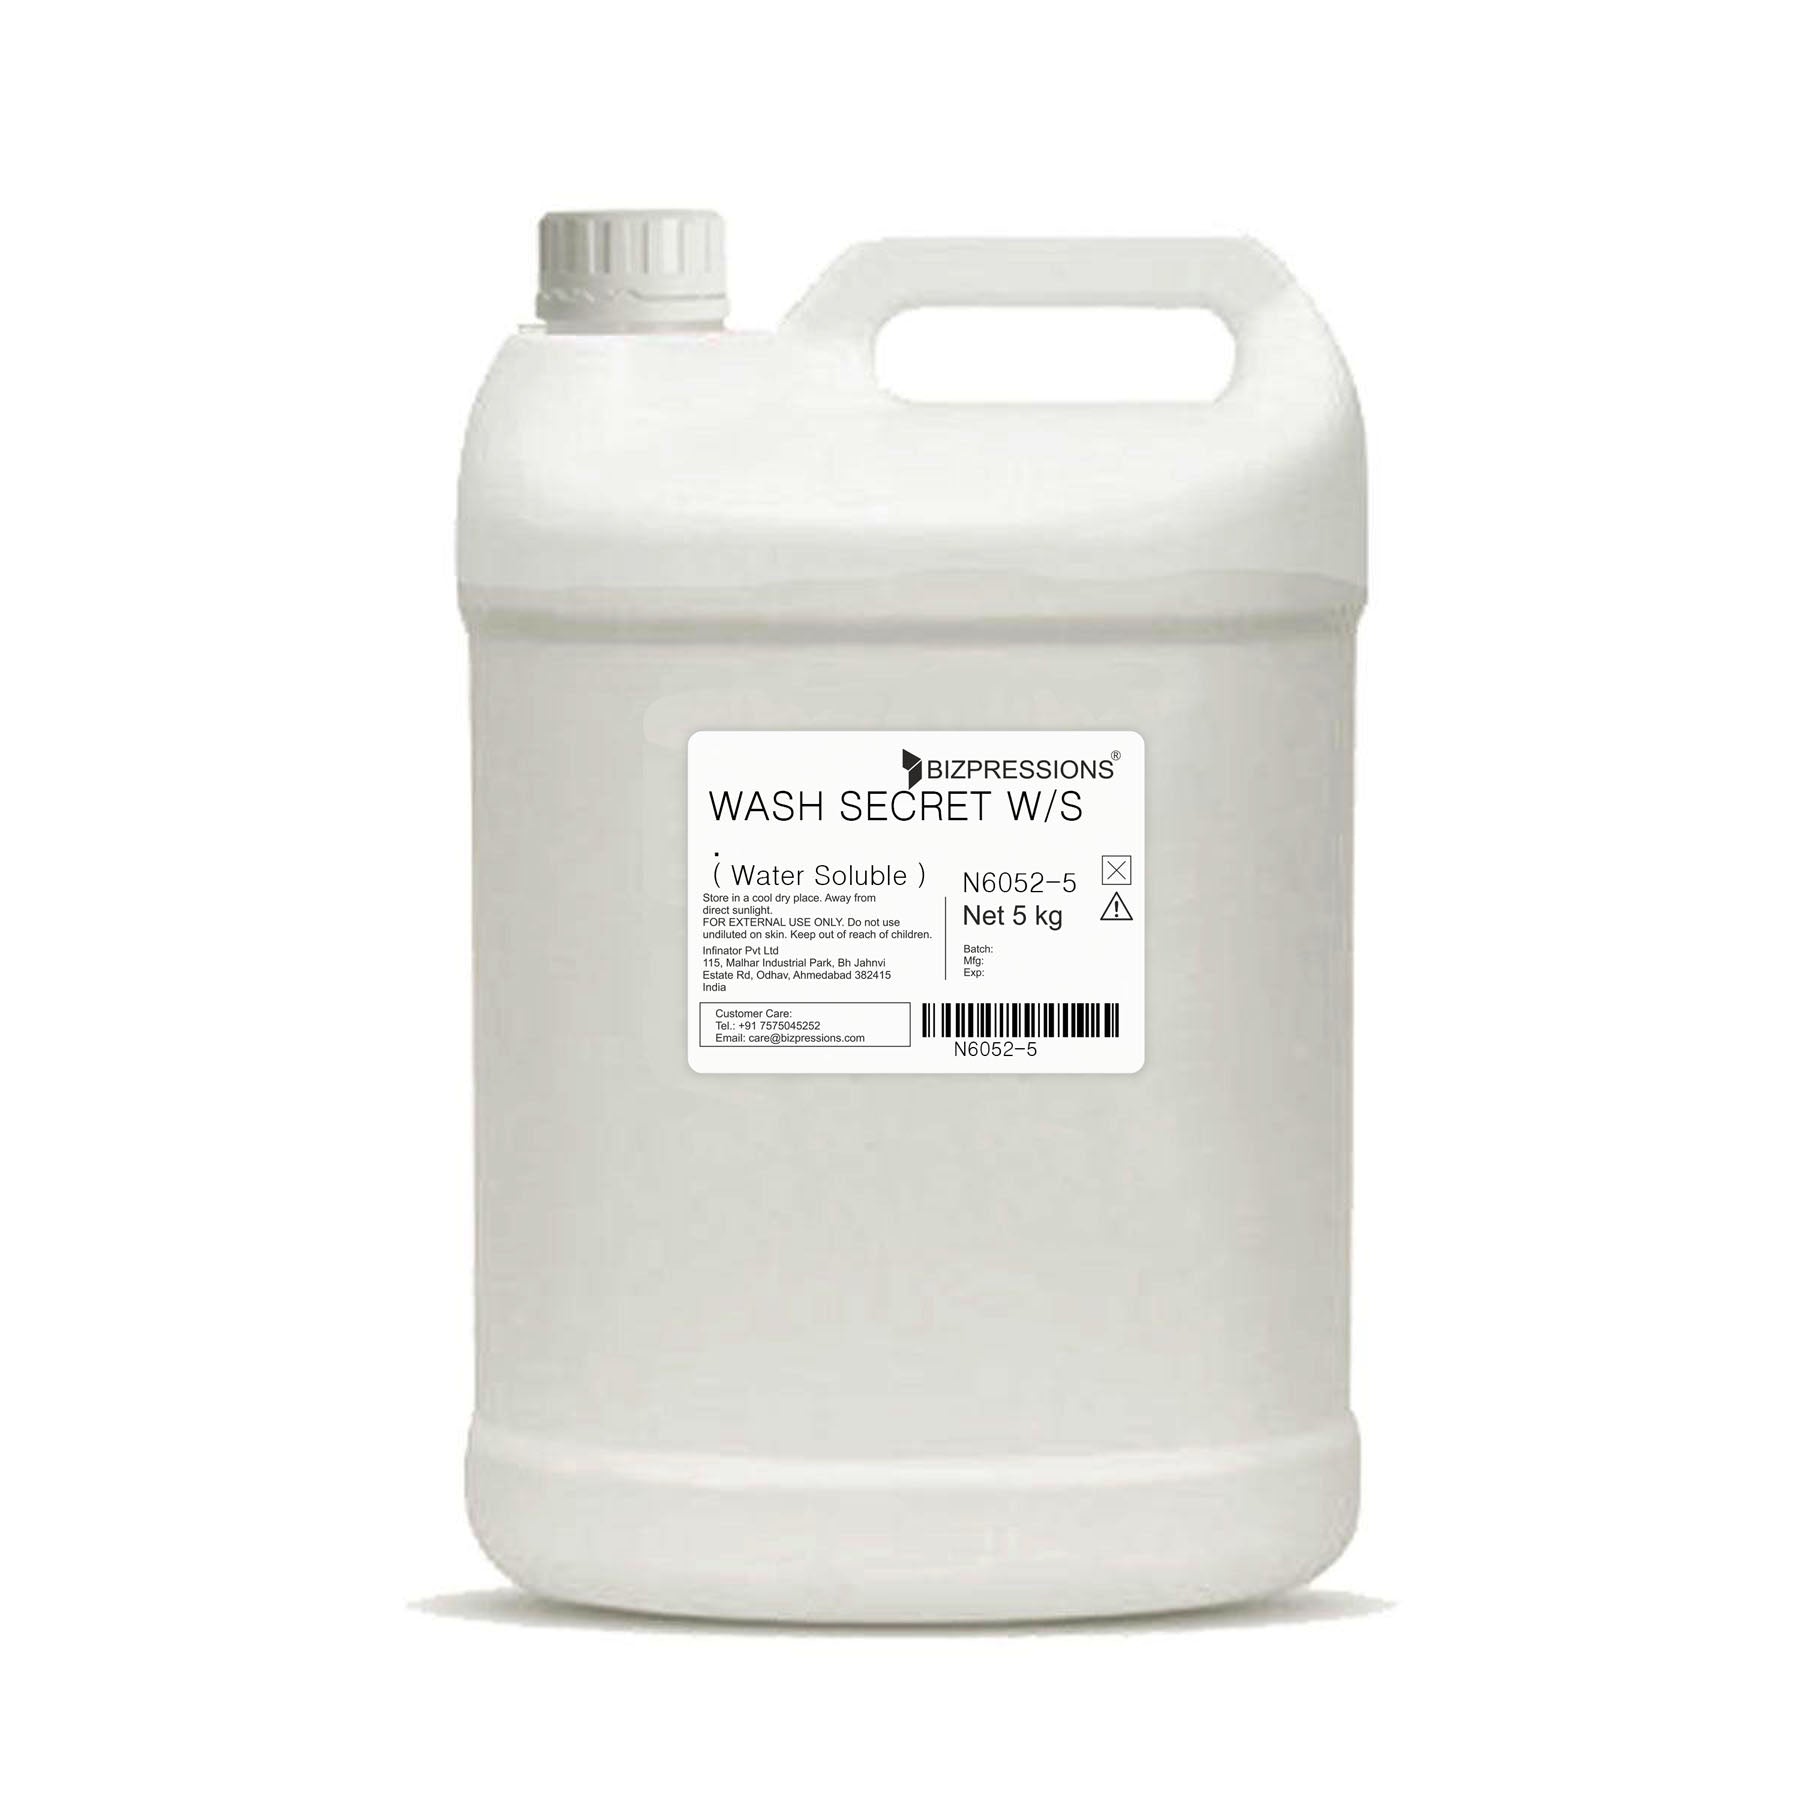 WASH SECRET W/S - Fragrance ( Water Soluble ) - 5 kg